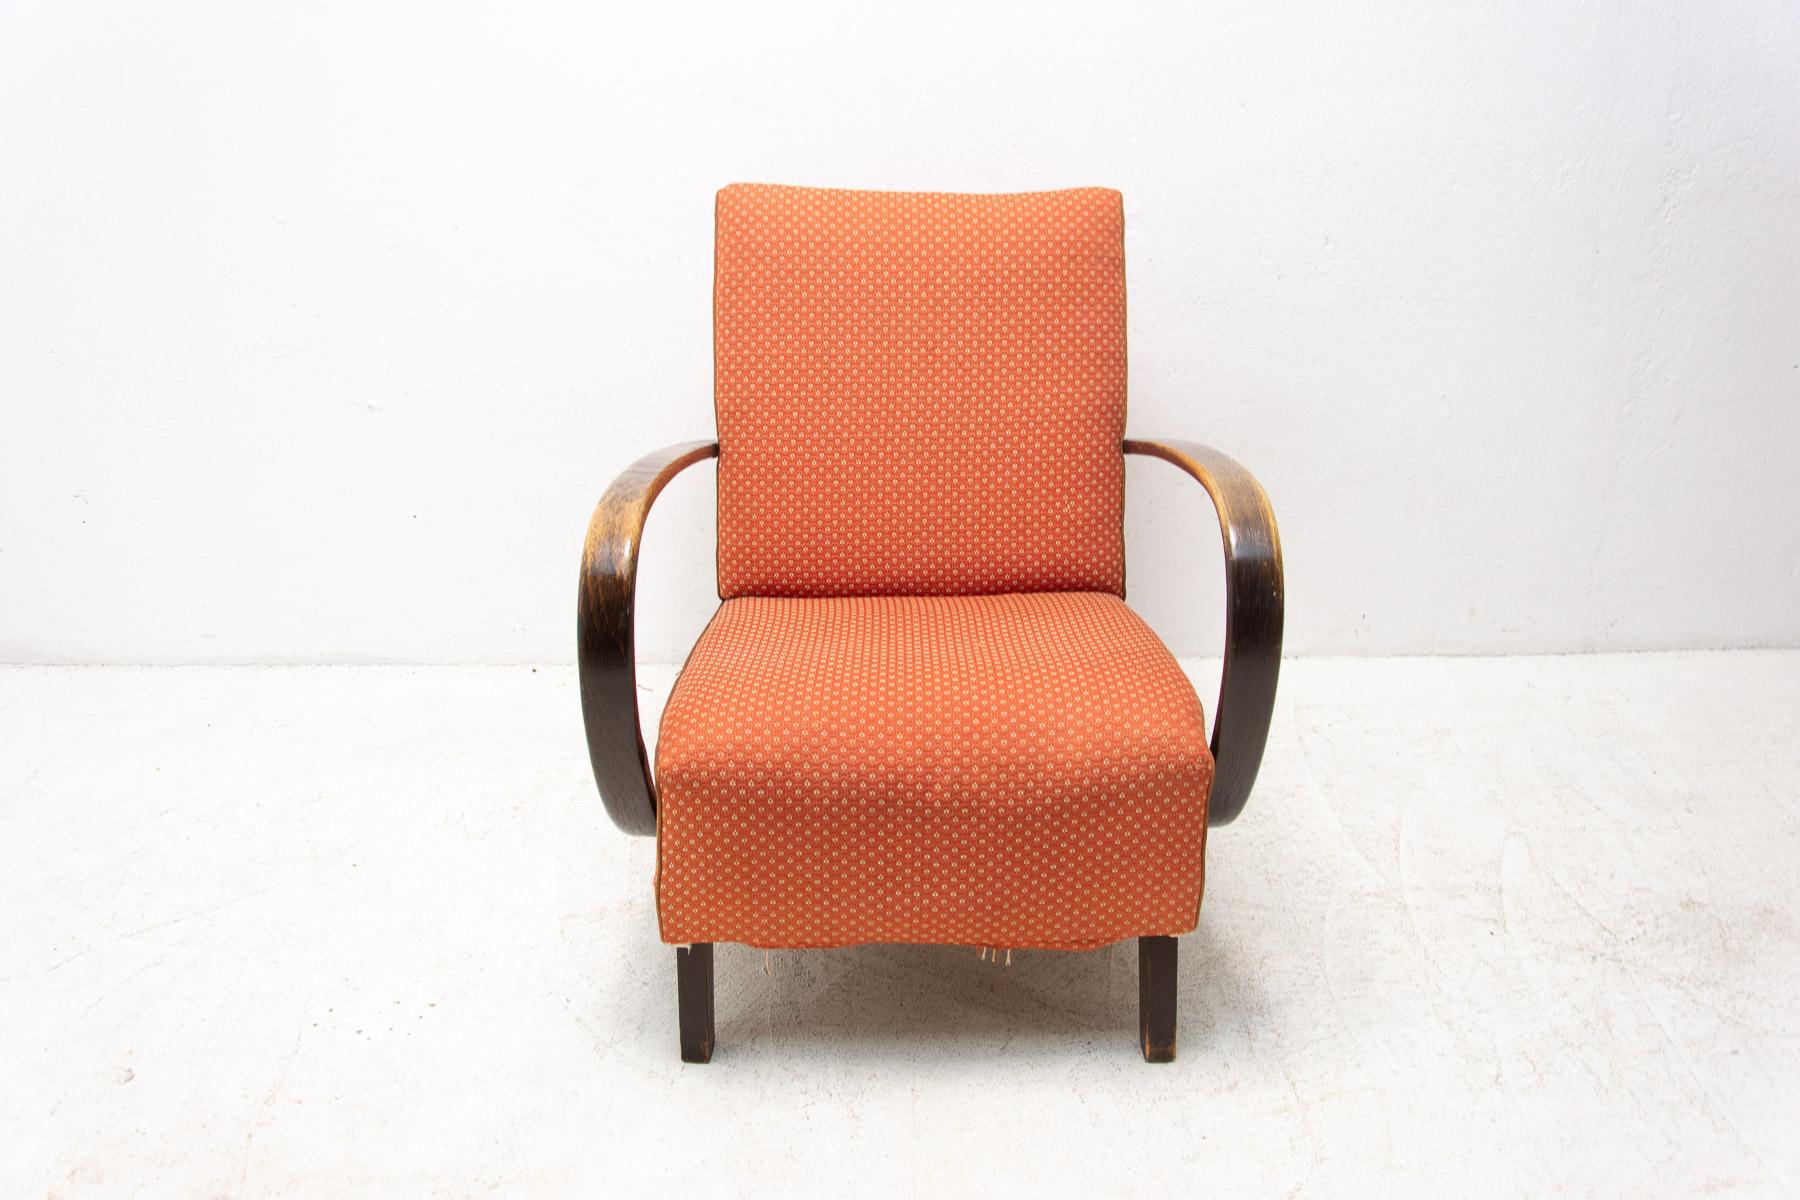 halabala chairs for sale